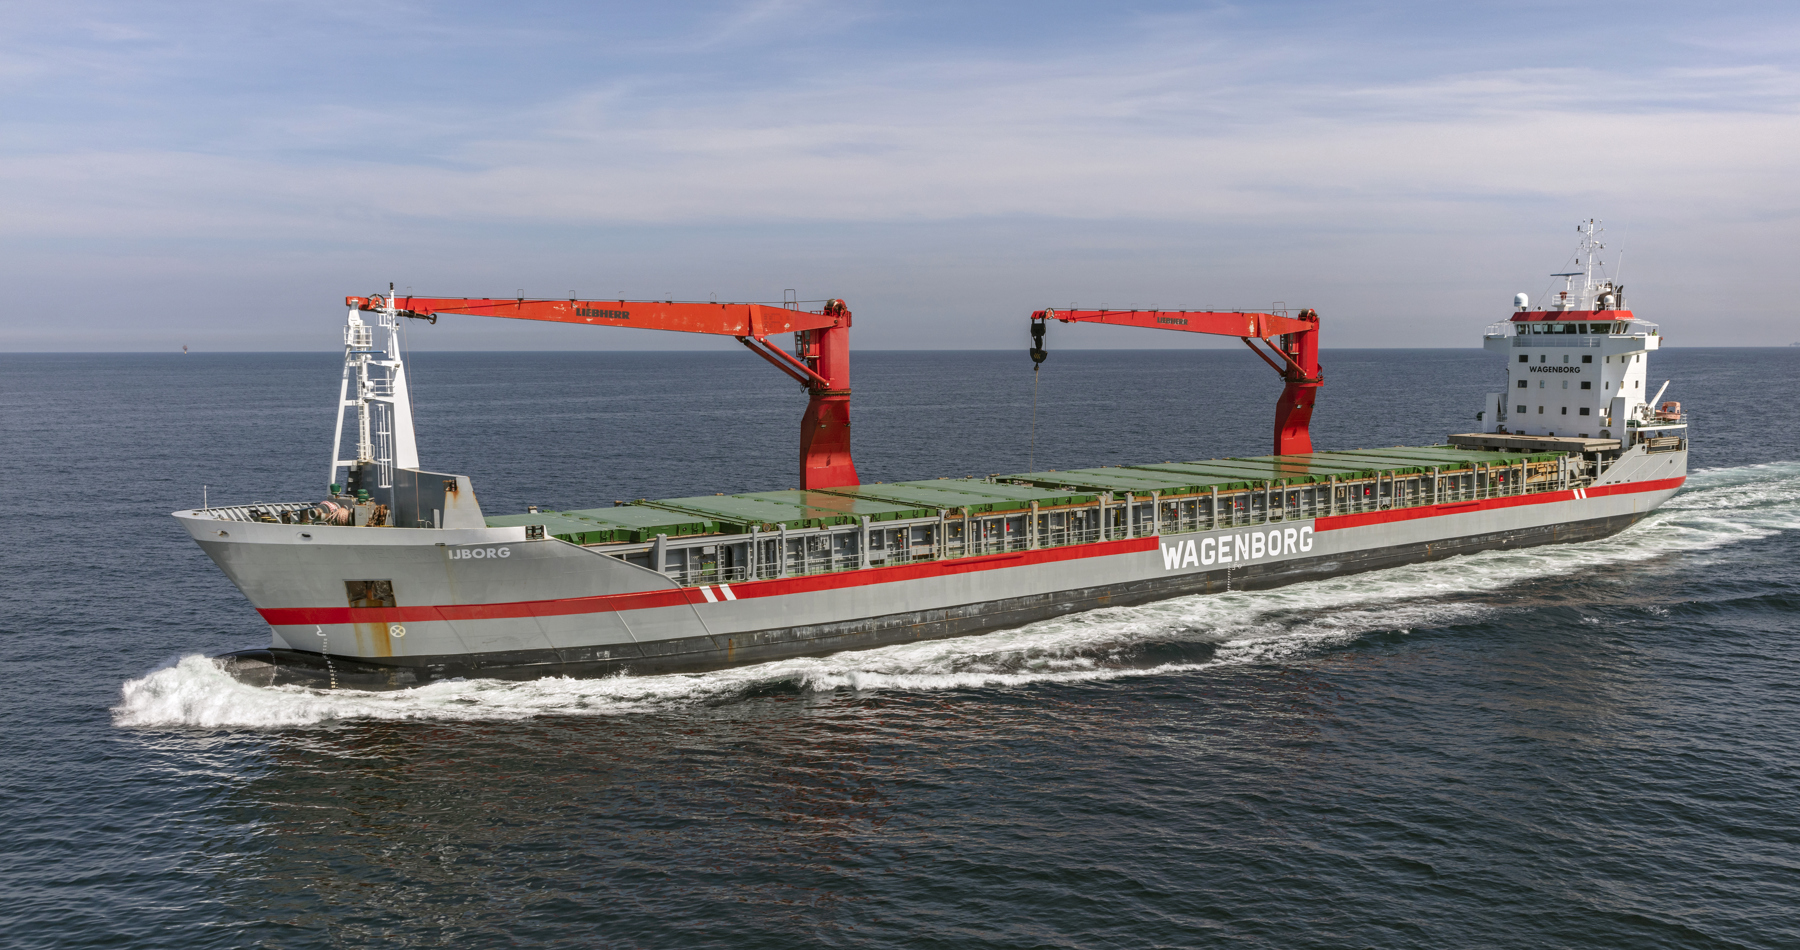 MV IJborg sold and delivered